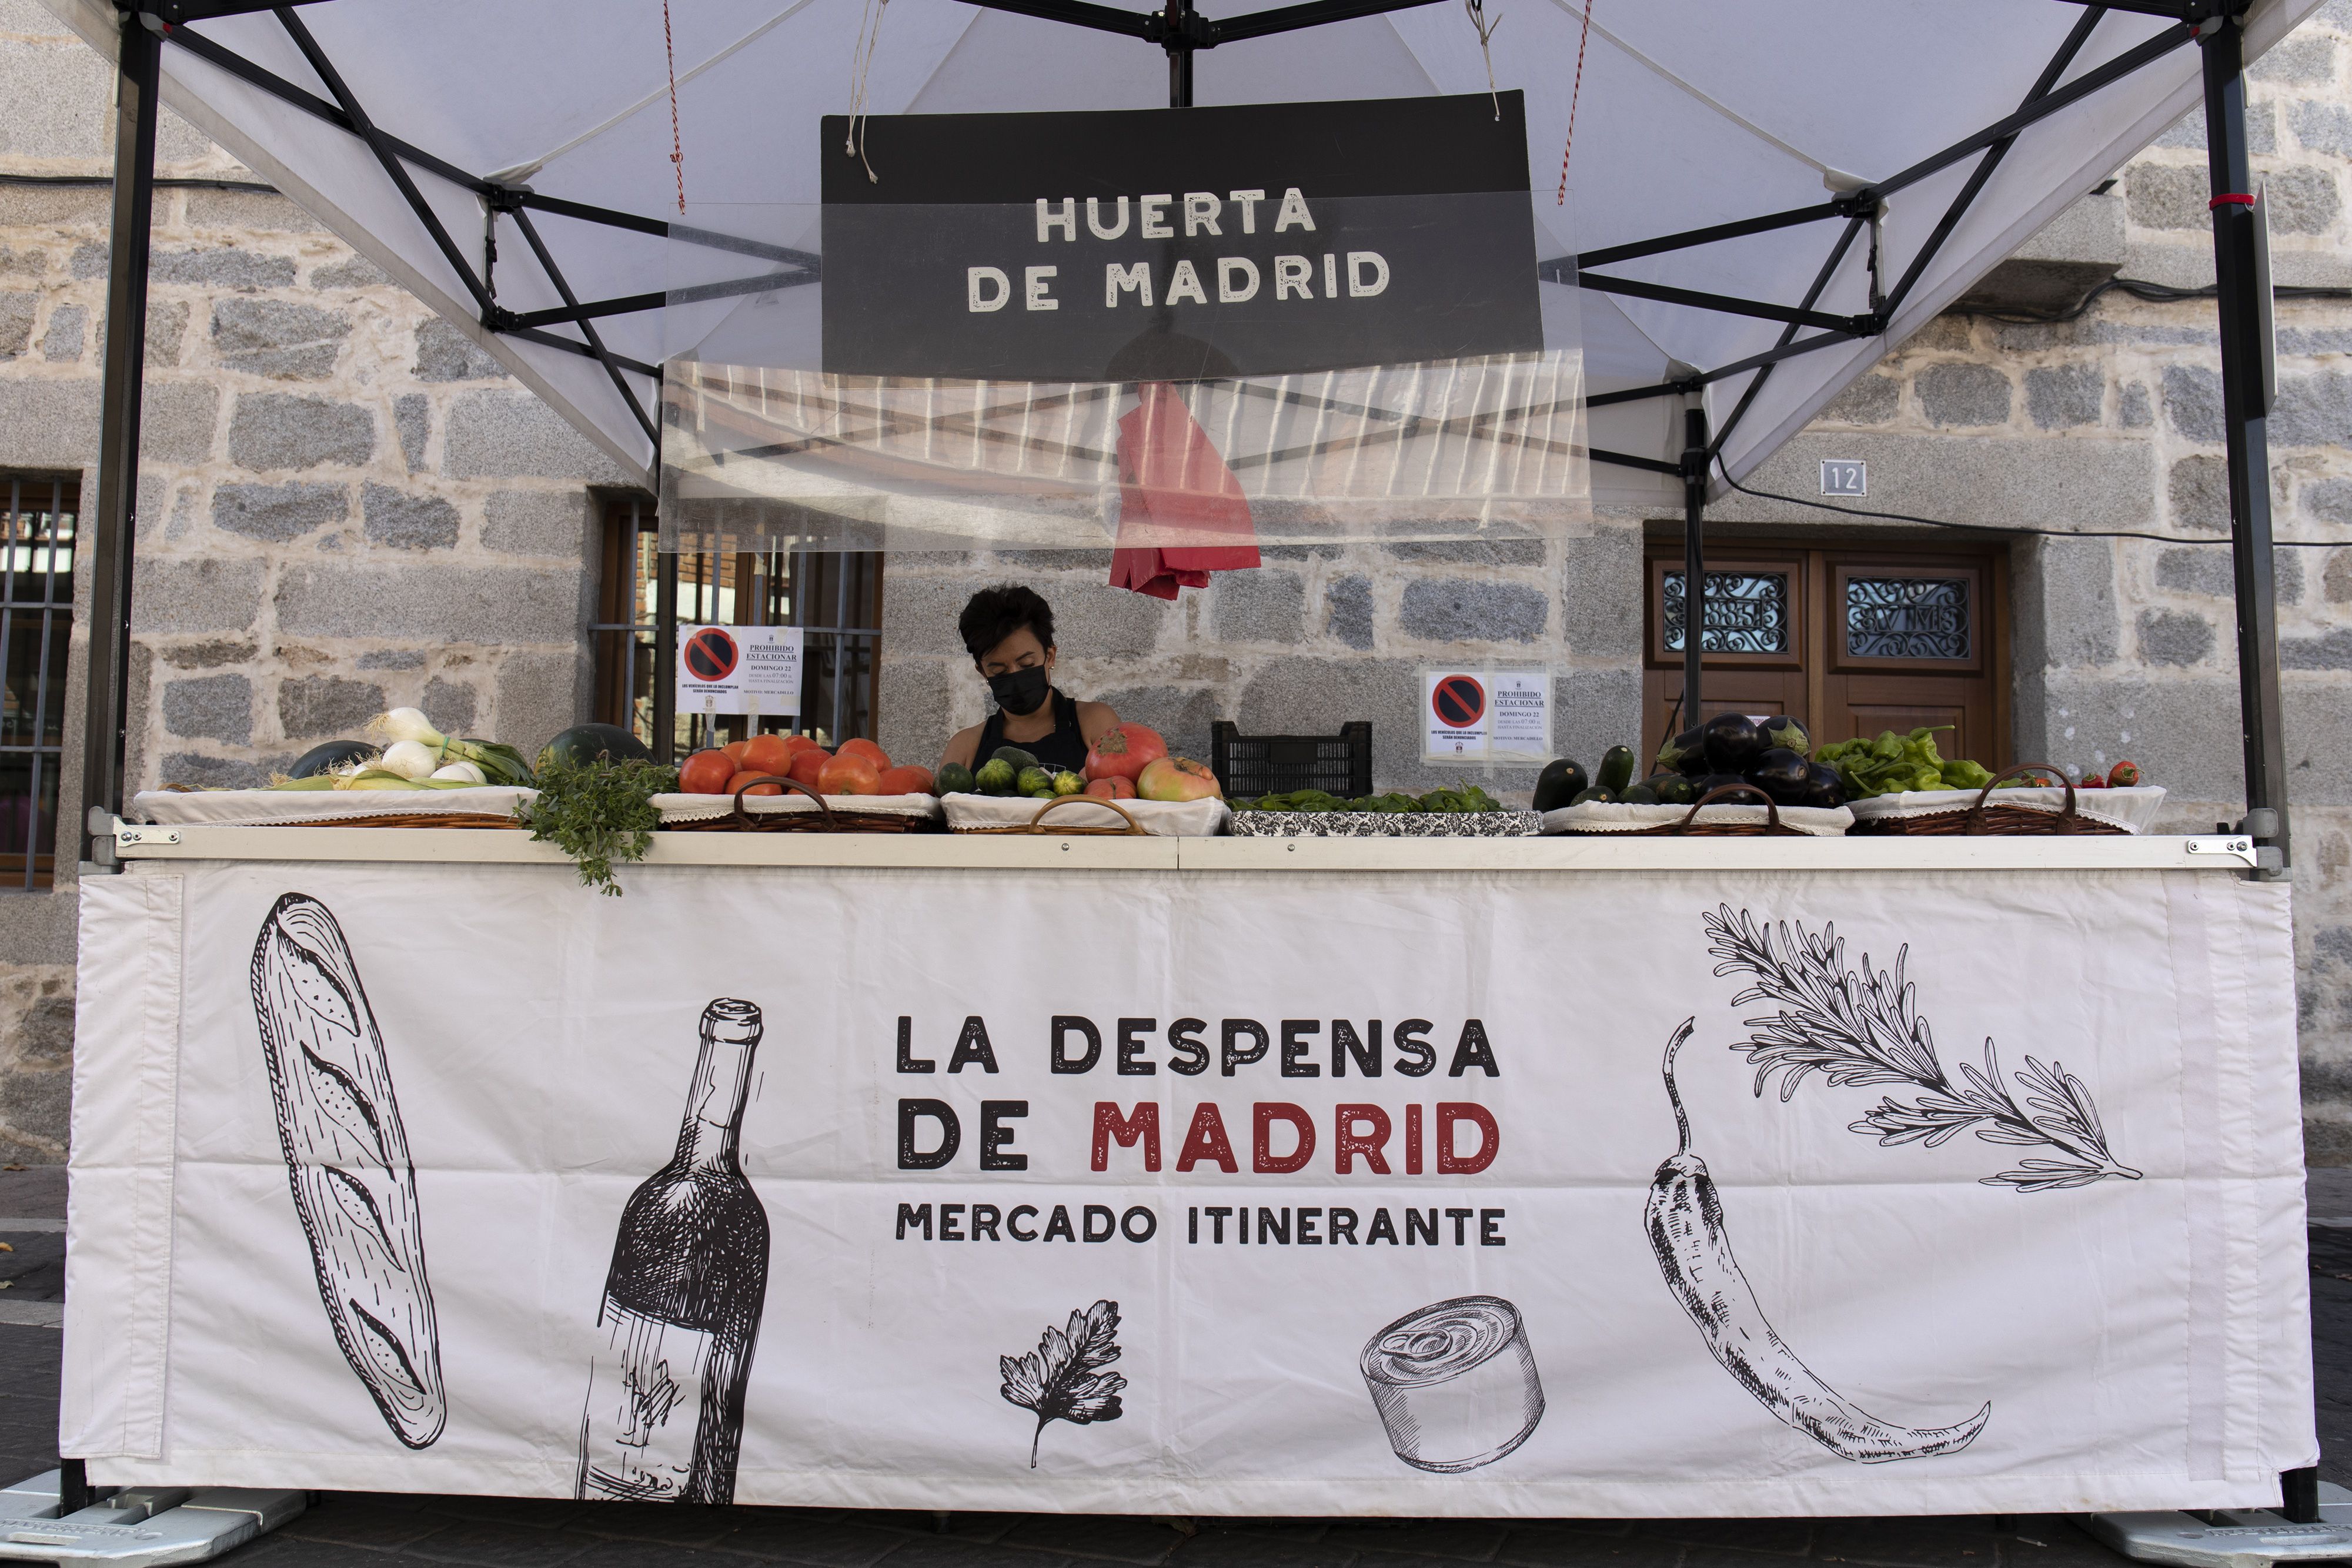 La despensa de Madrid, el mercado itinerante con los mejores alimentos regionales, llega a Venturada